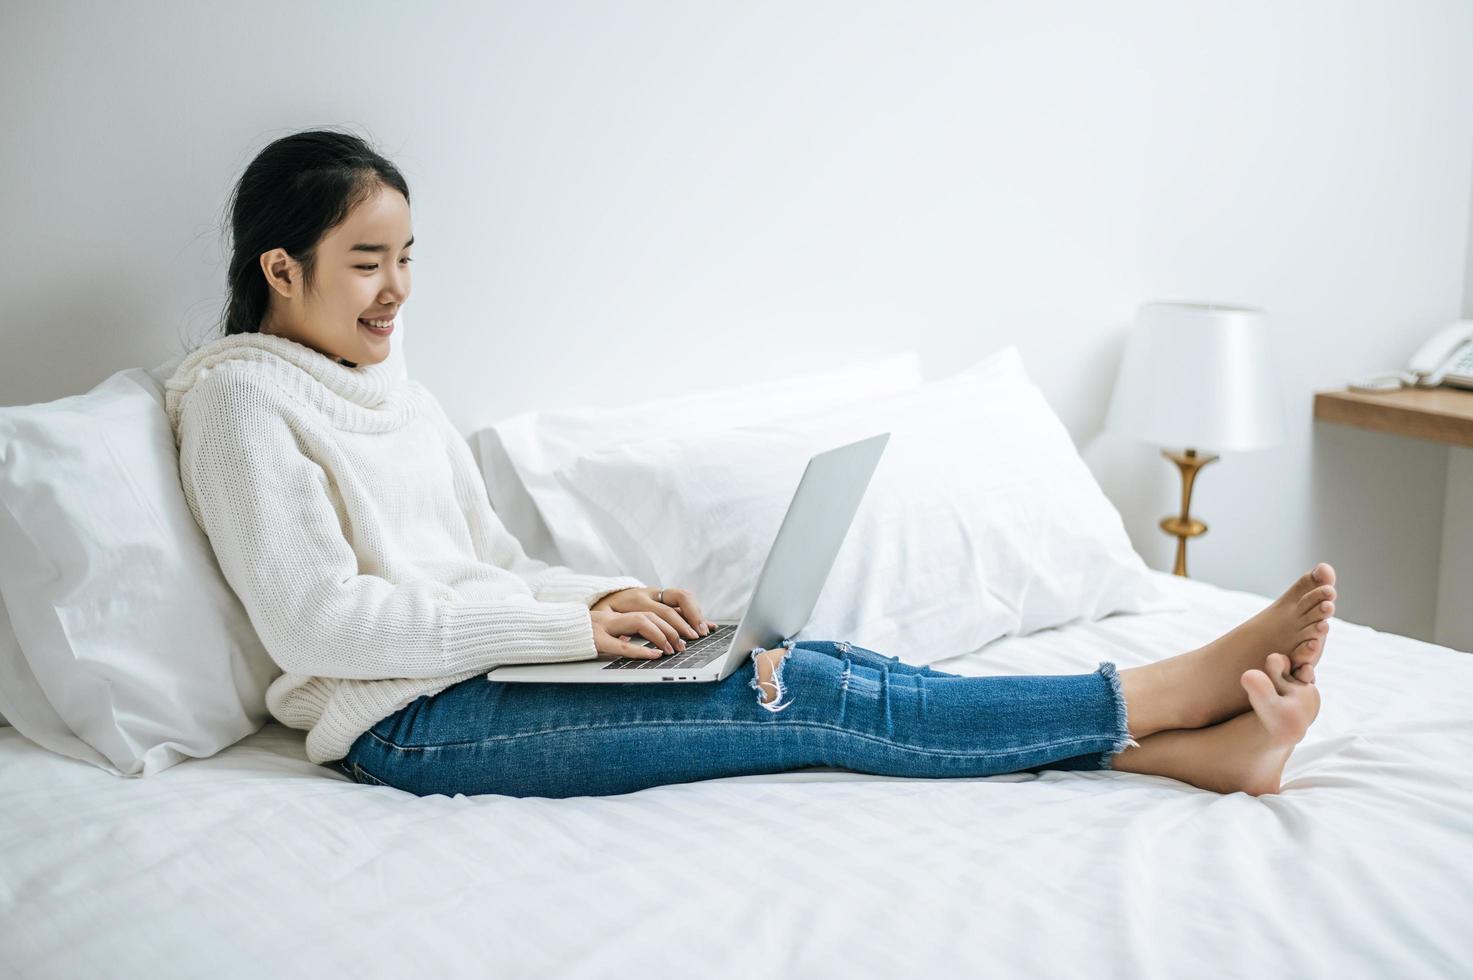 jeune femme portant une chemise blanche jouant sur son ordinateur portable photo